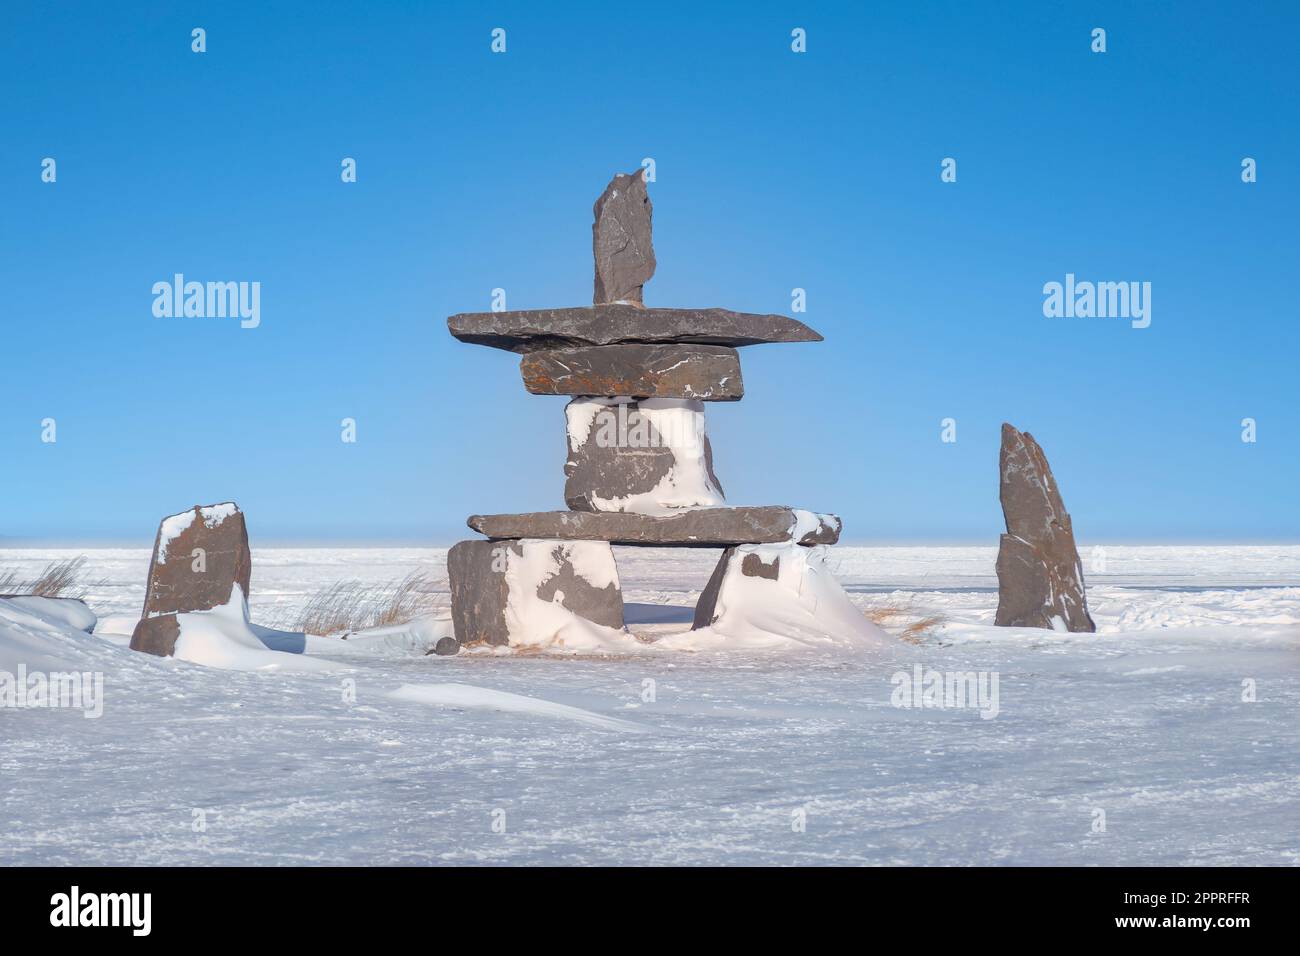 Ein arktisches kulturelles Wahrzeichen, bekannt als Inukshuk, das als Navigationshilfen und Kommunikationsmittel für die Menschen der First Nations im kanadischen Norden verwendet wird. Ich Bin Churchill Stockfoto